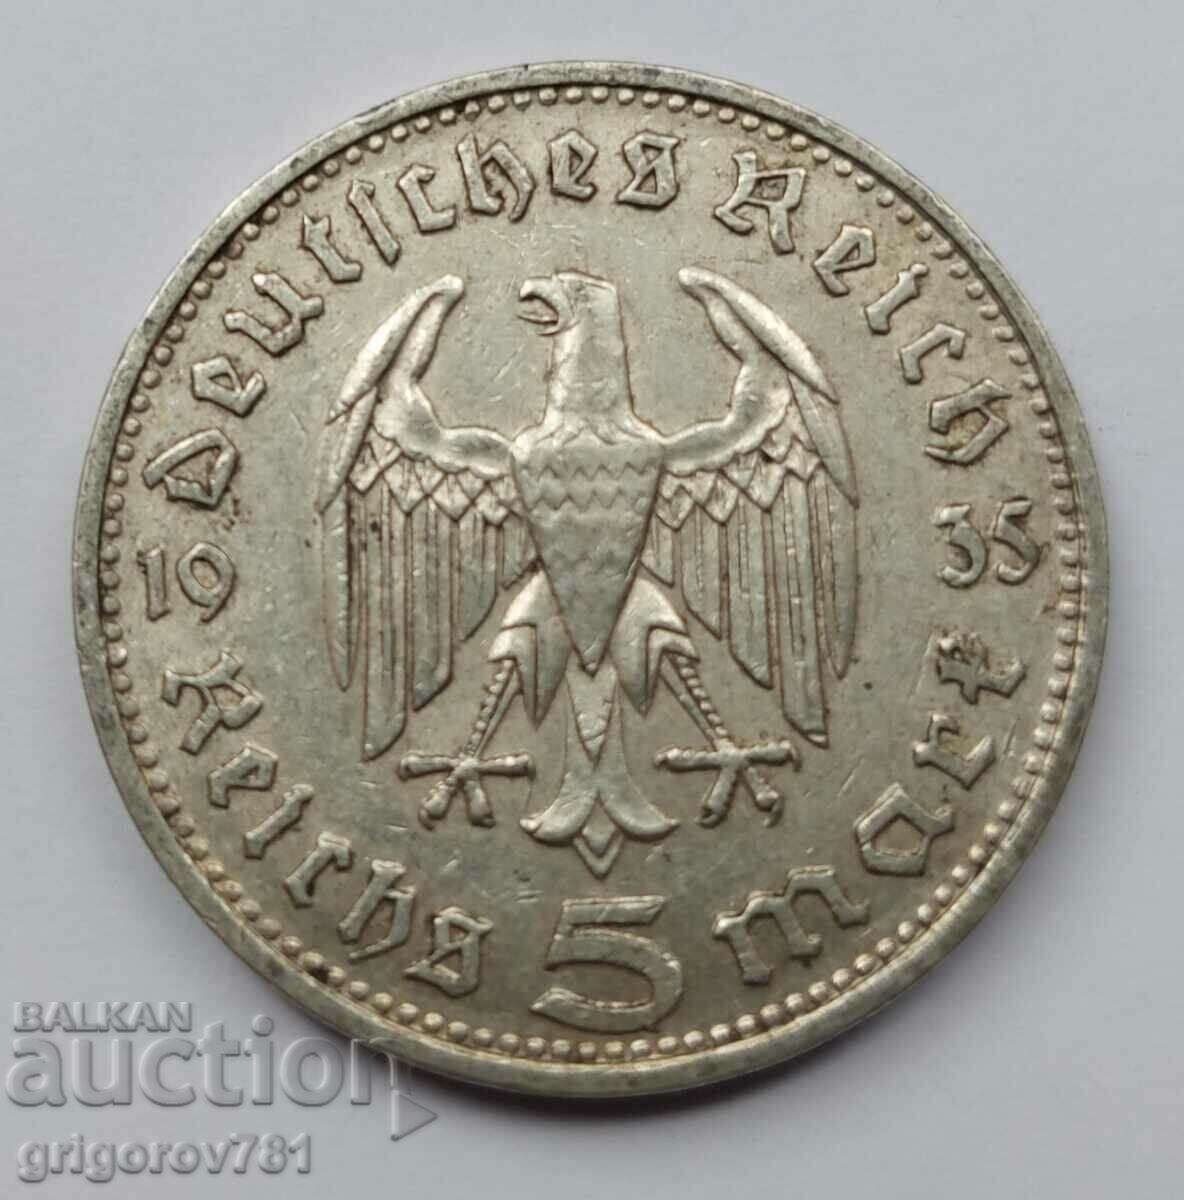 Moneda de argint 5 Mark Germania 1935 D III Reich #64